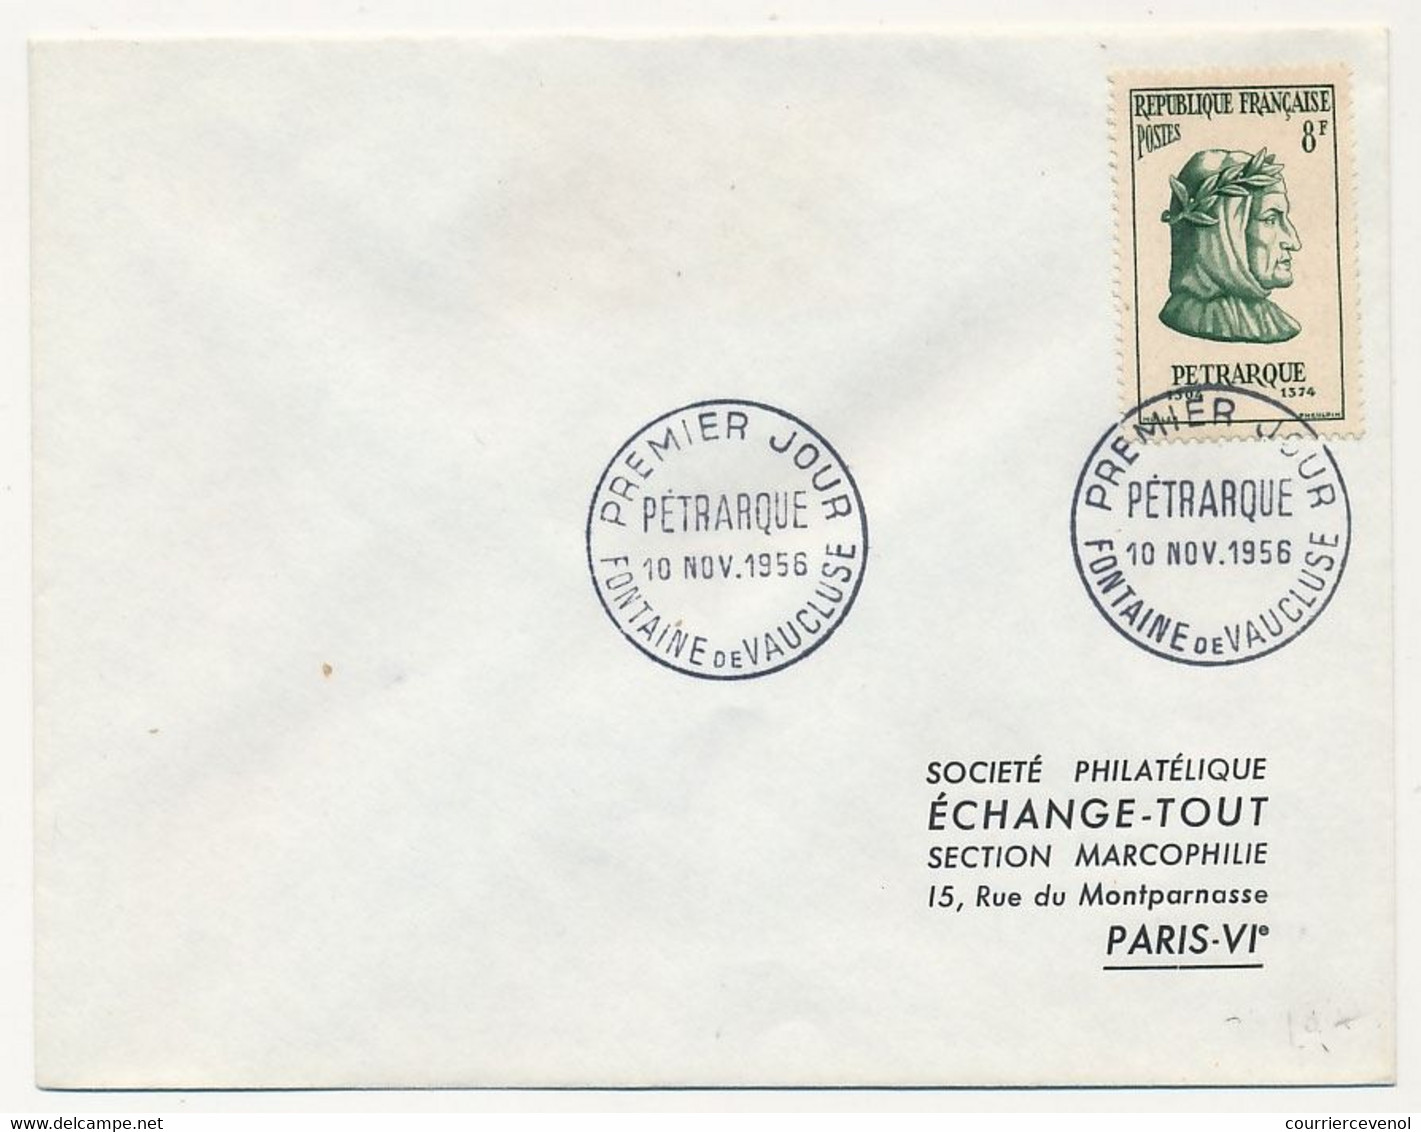 FRANCE - Env Affr. 8F Pétrarque - Obl Premier Jour Fontaine De Vaucluse 10 Nov 1956 - Covers & Documents